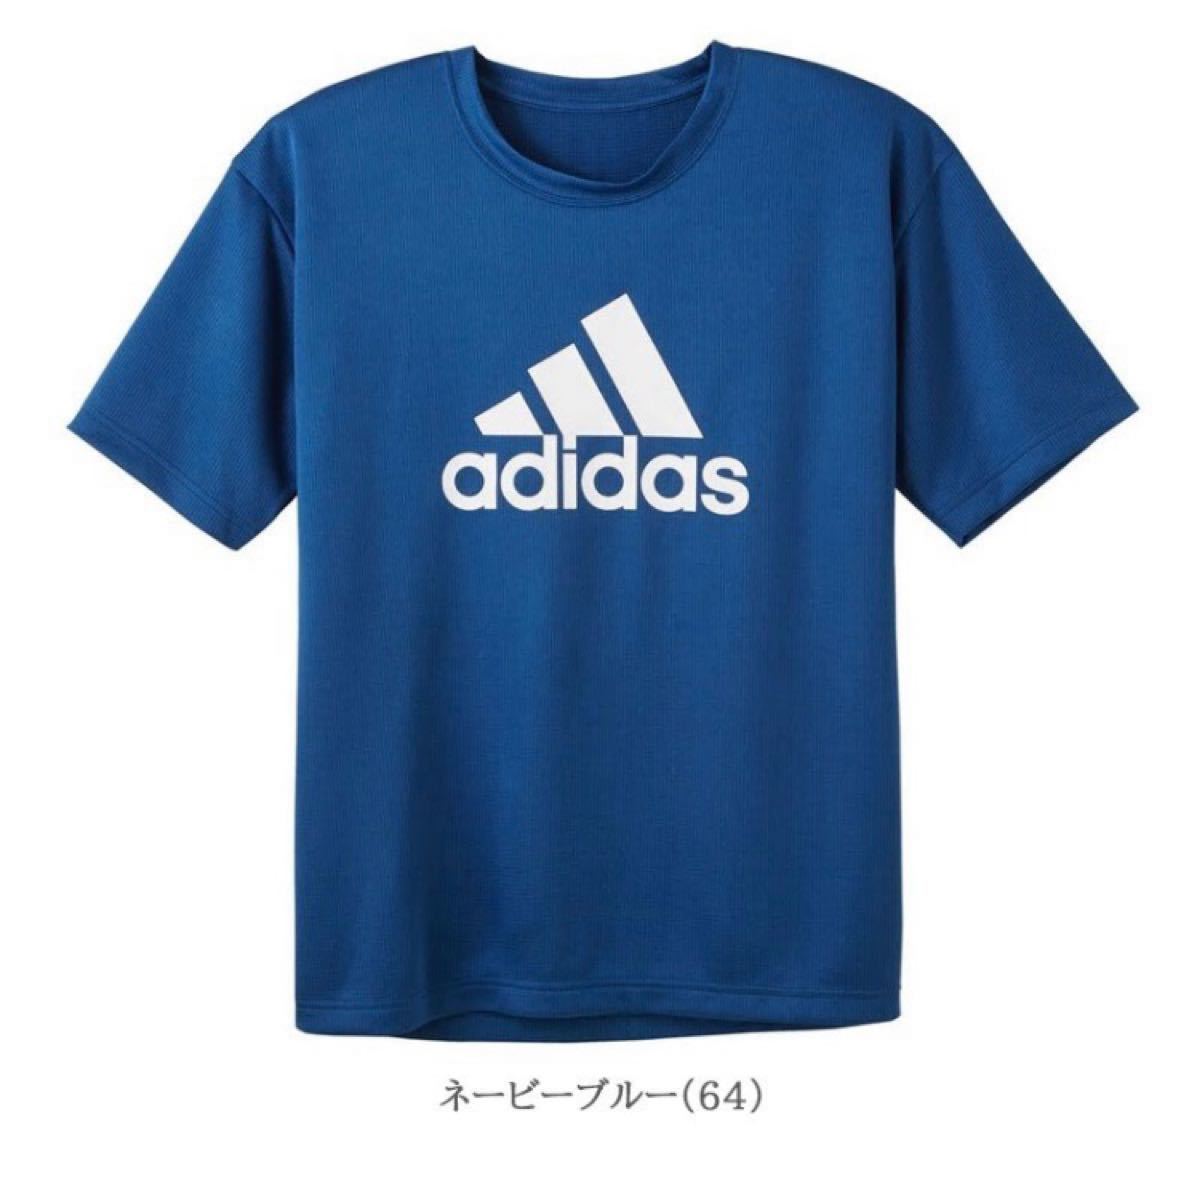 adidas アディダス ロゴ メッシュ 半袖 Tシャツ ネービーブルー Lサイズ グンゼ インナーＴシャツ APU013A